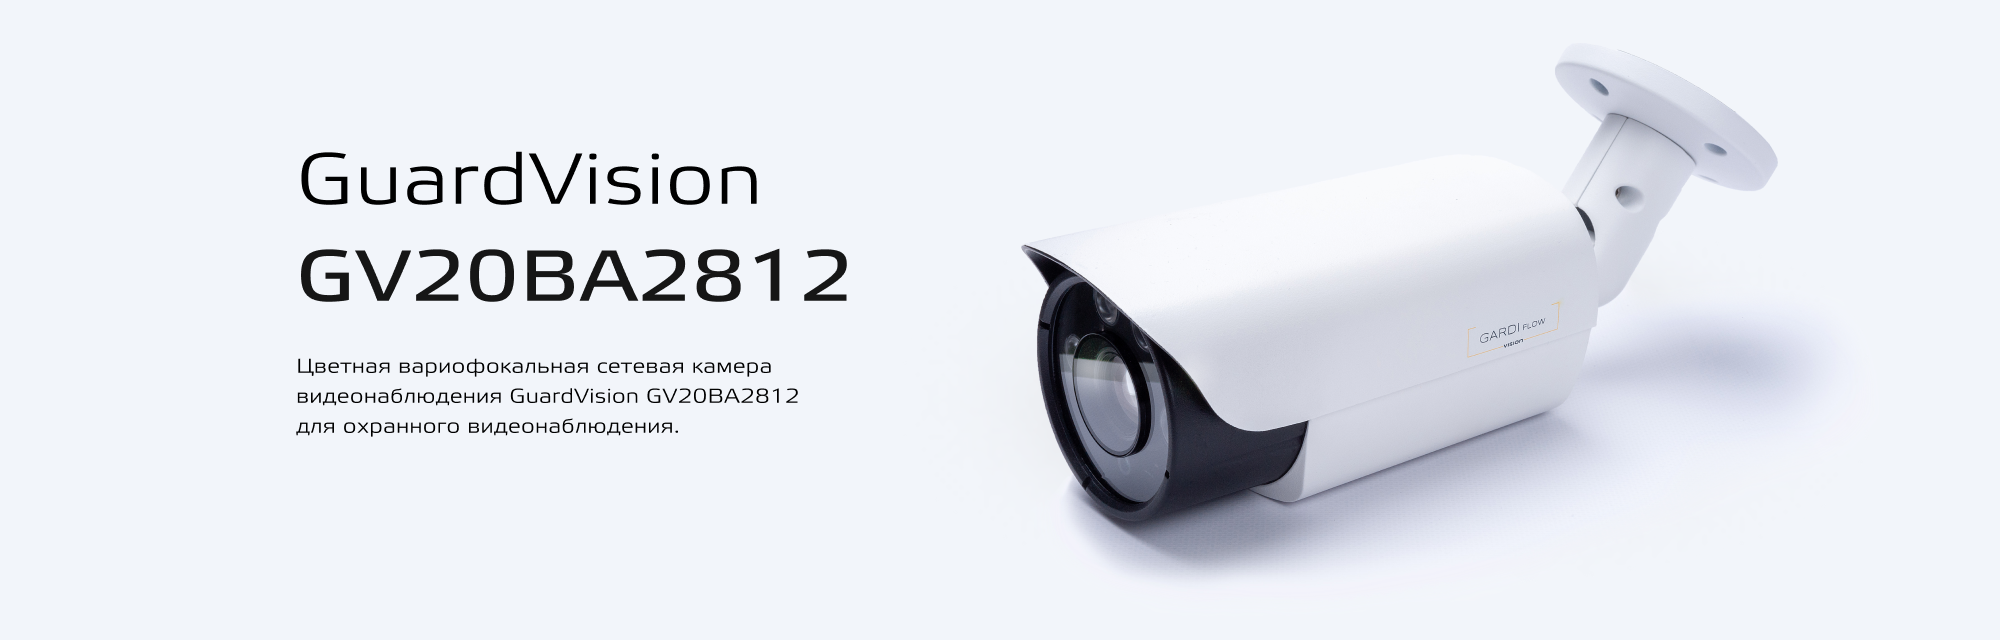 Цветная вариофокальная сетевая камера видеонаблюдения – GuardVision GV20BA2812